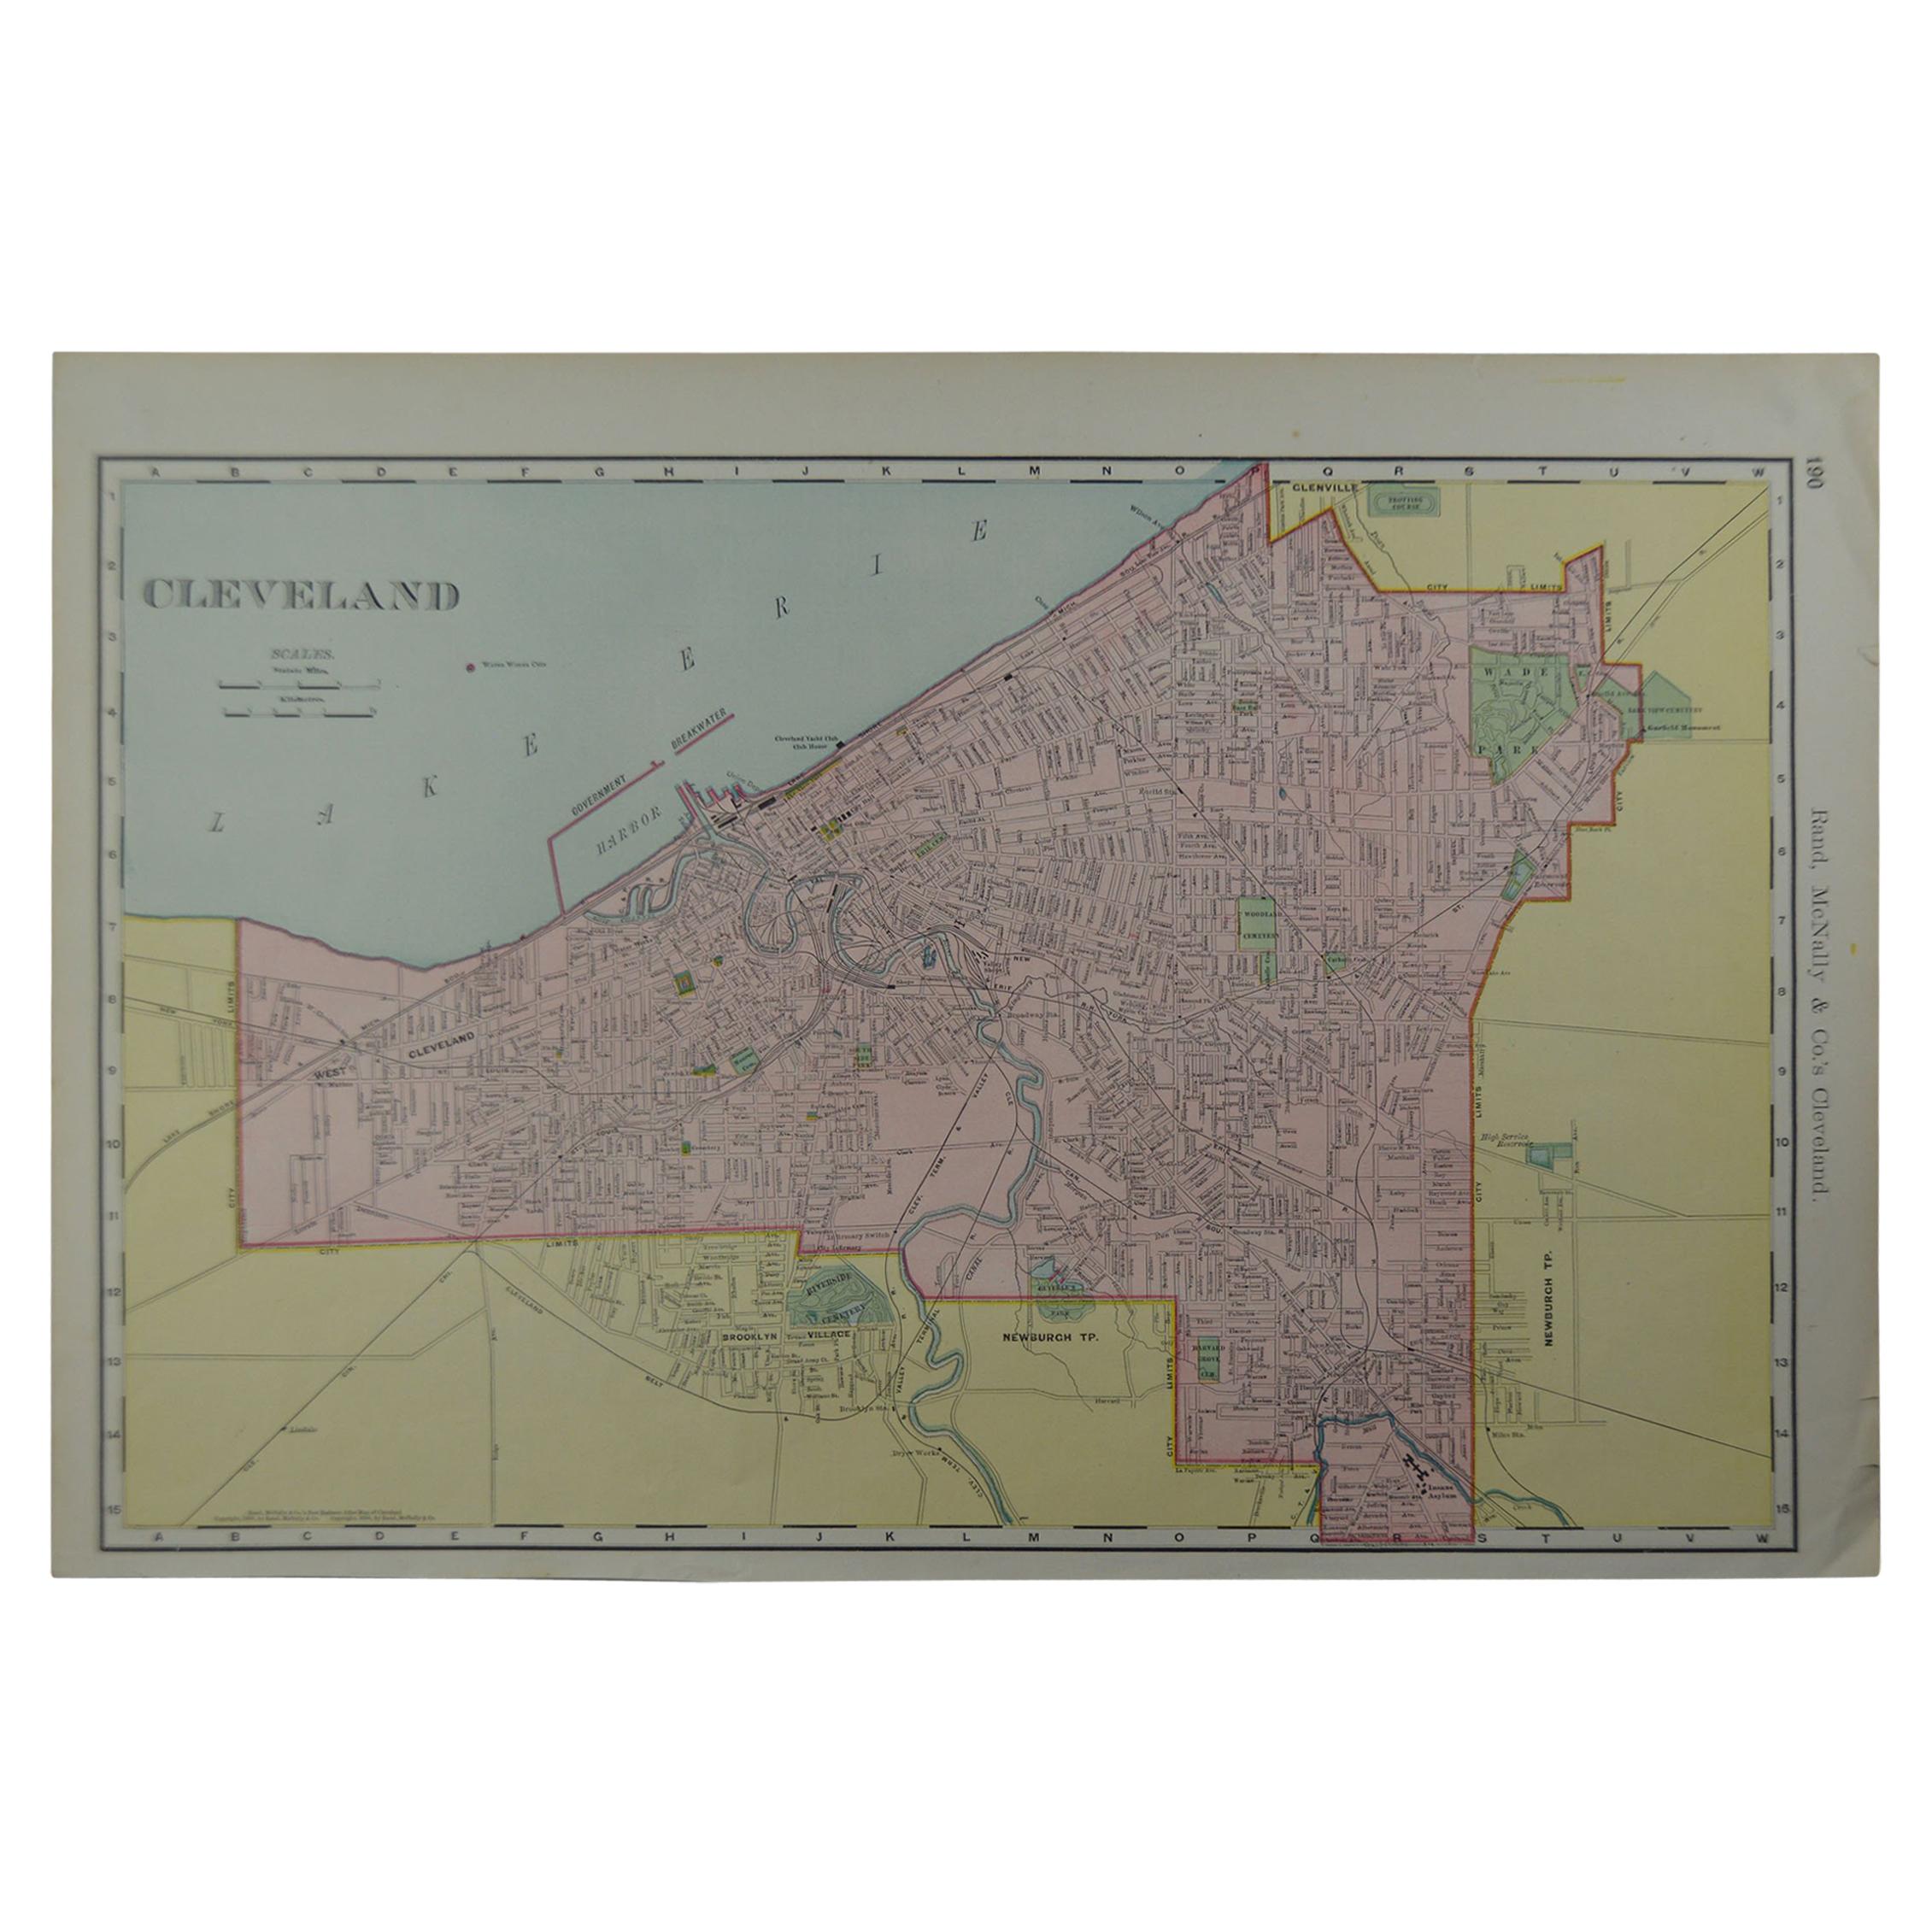 Original Antique City Plan of Cleveland, Ohio USA, circa 1900